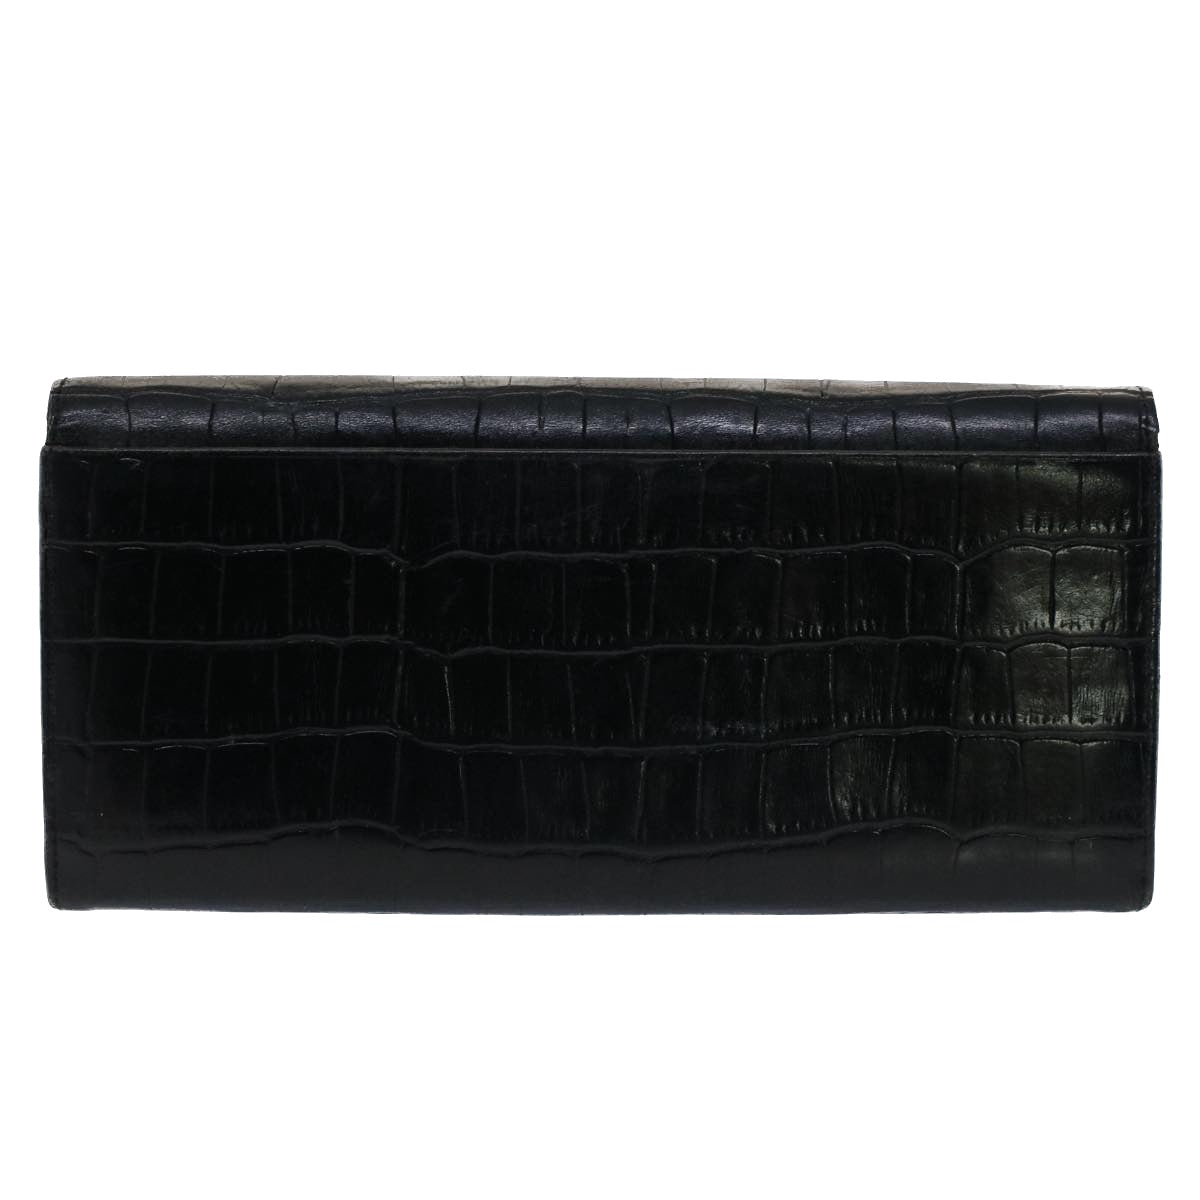 SAINT LAURENT Wallet Leather 3Set Black Auth bs7465